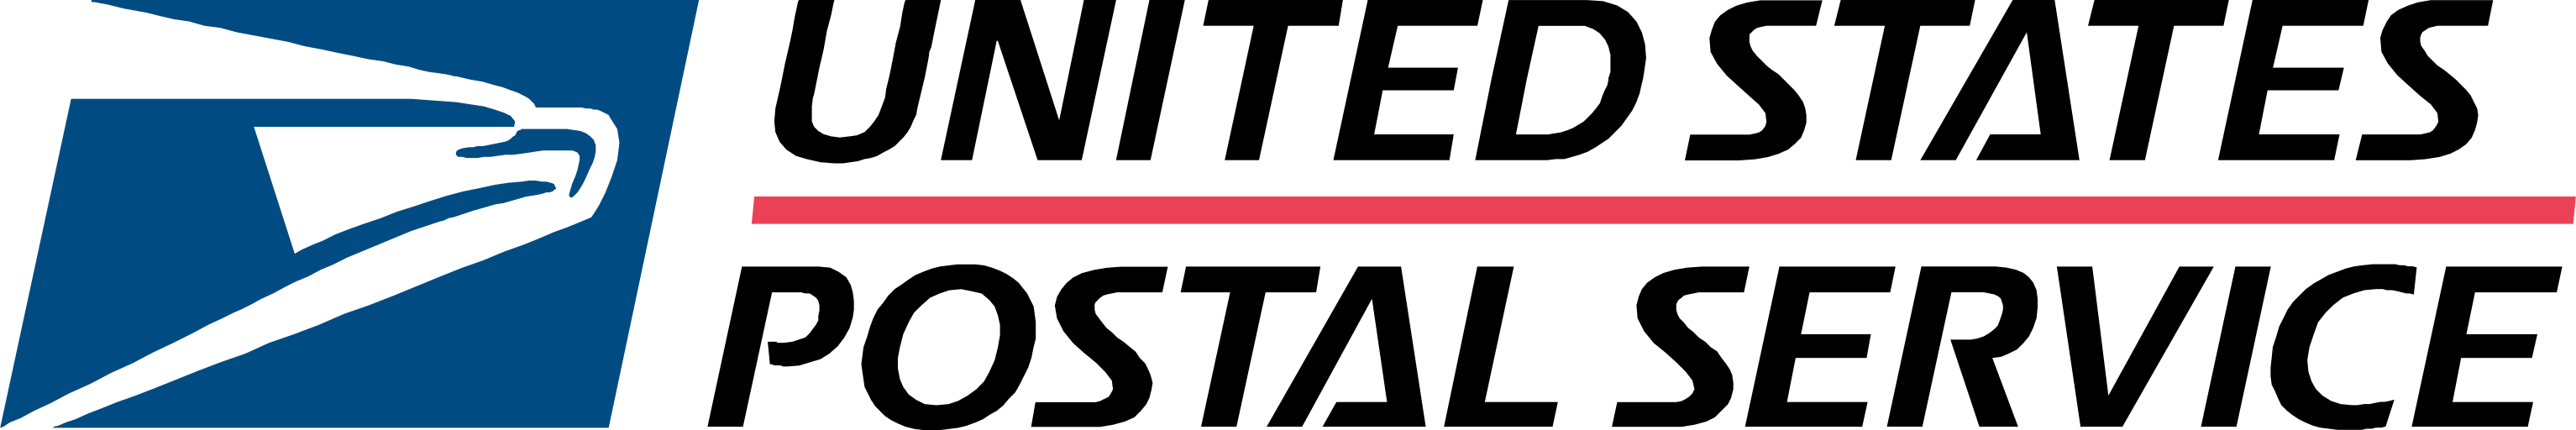 USPS Logo - United States Postal Services USPS Logo transparent PNG - StickPNG